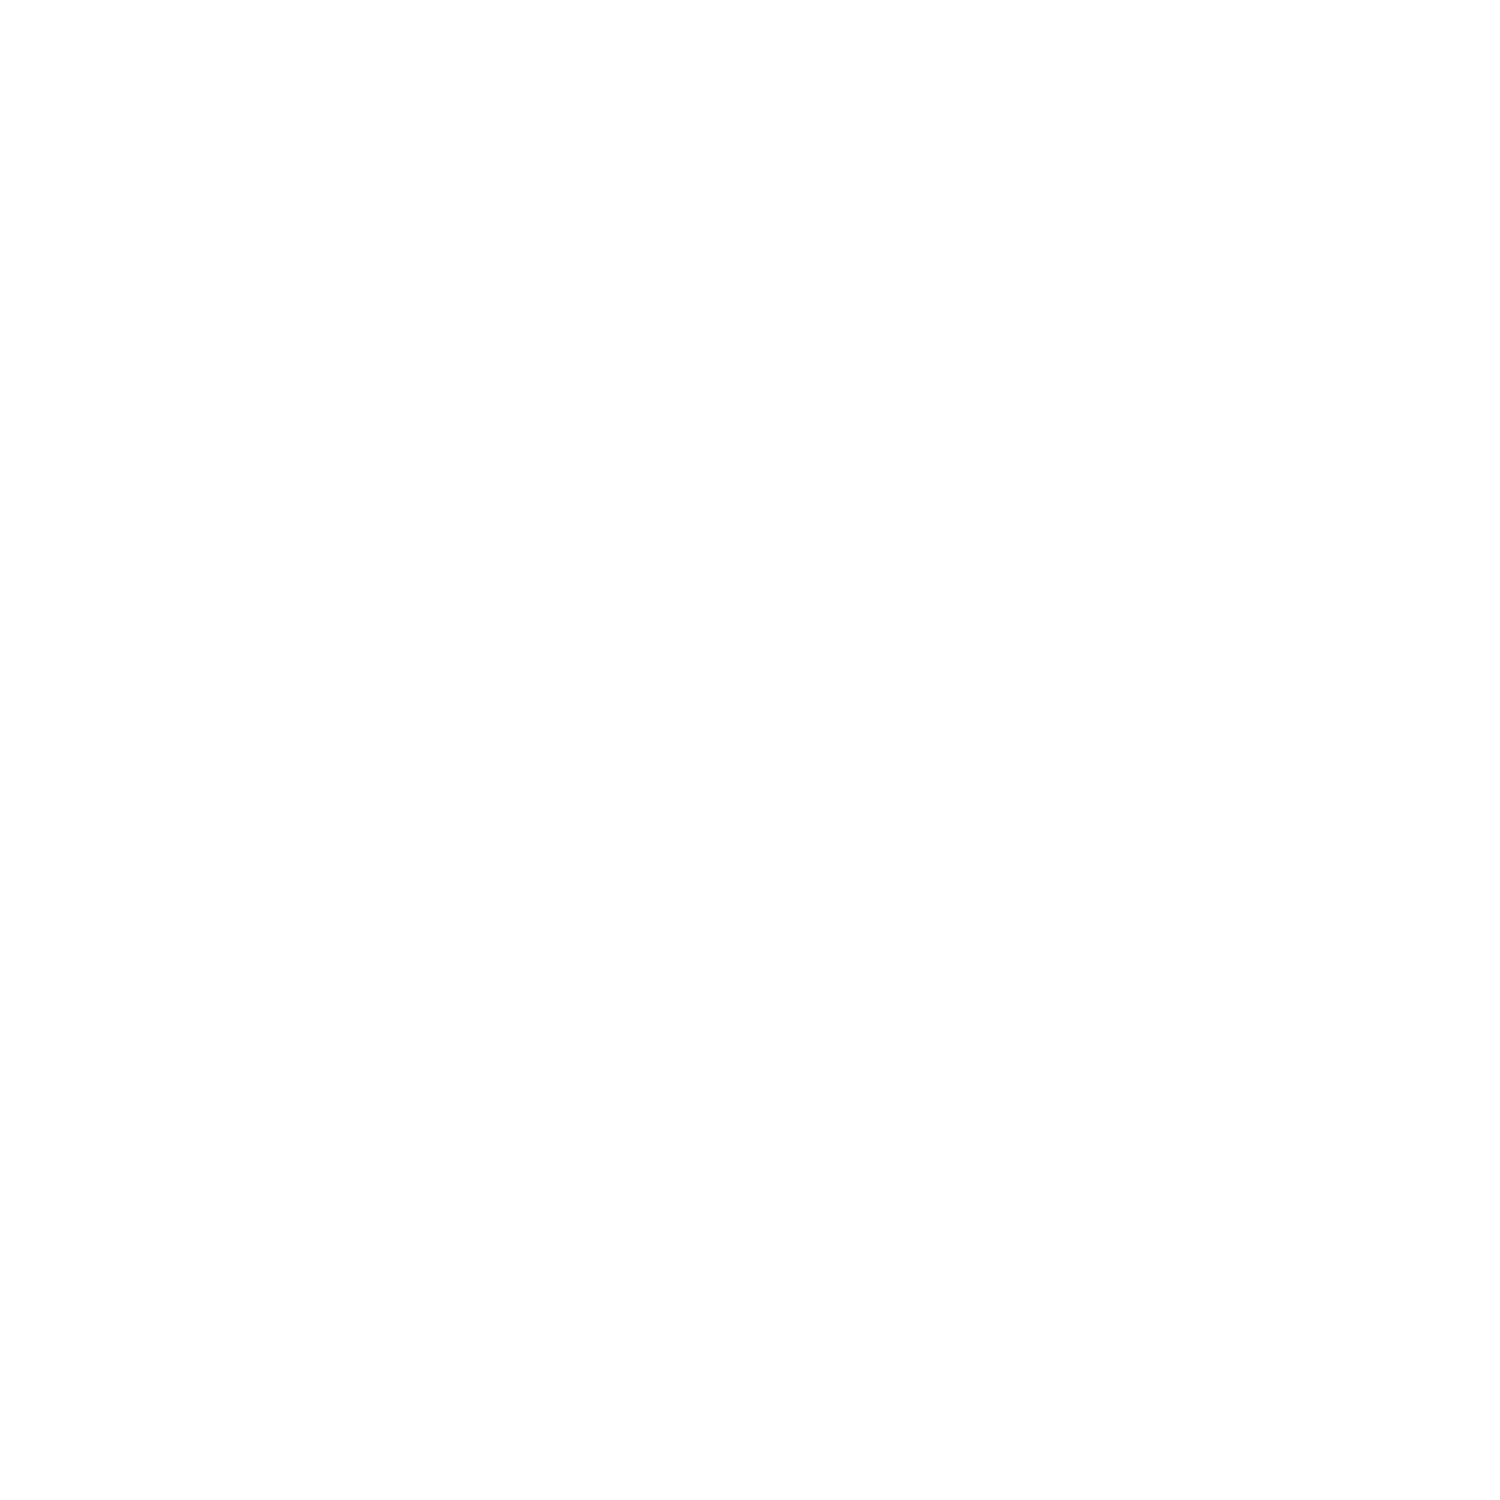 24-7 Prayer Morgan City